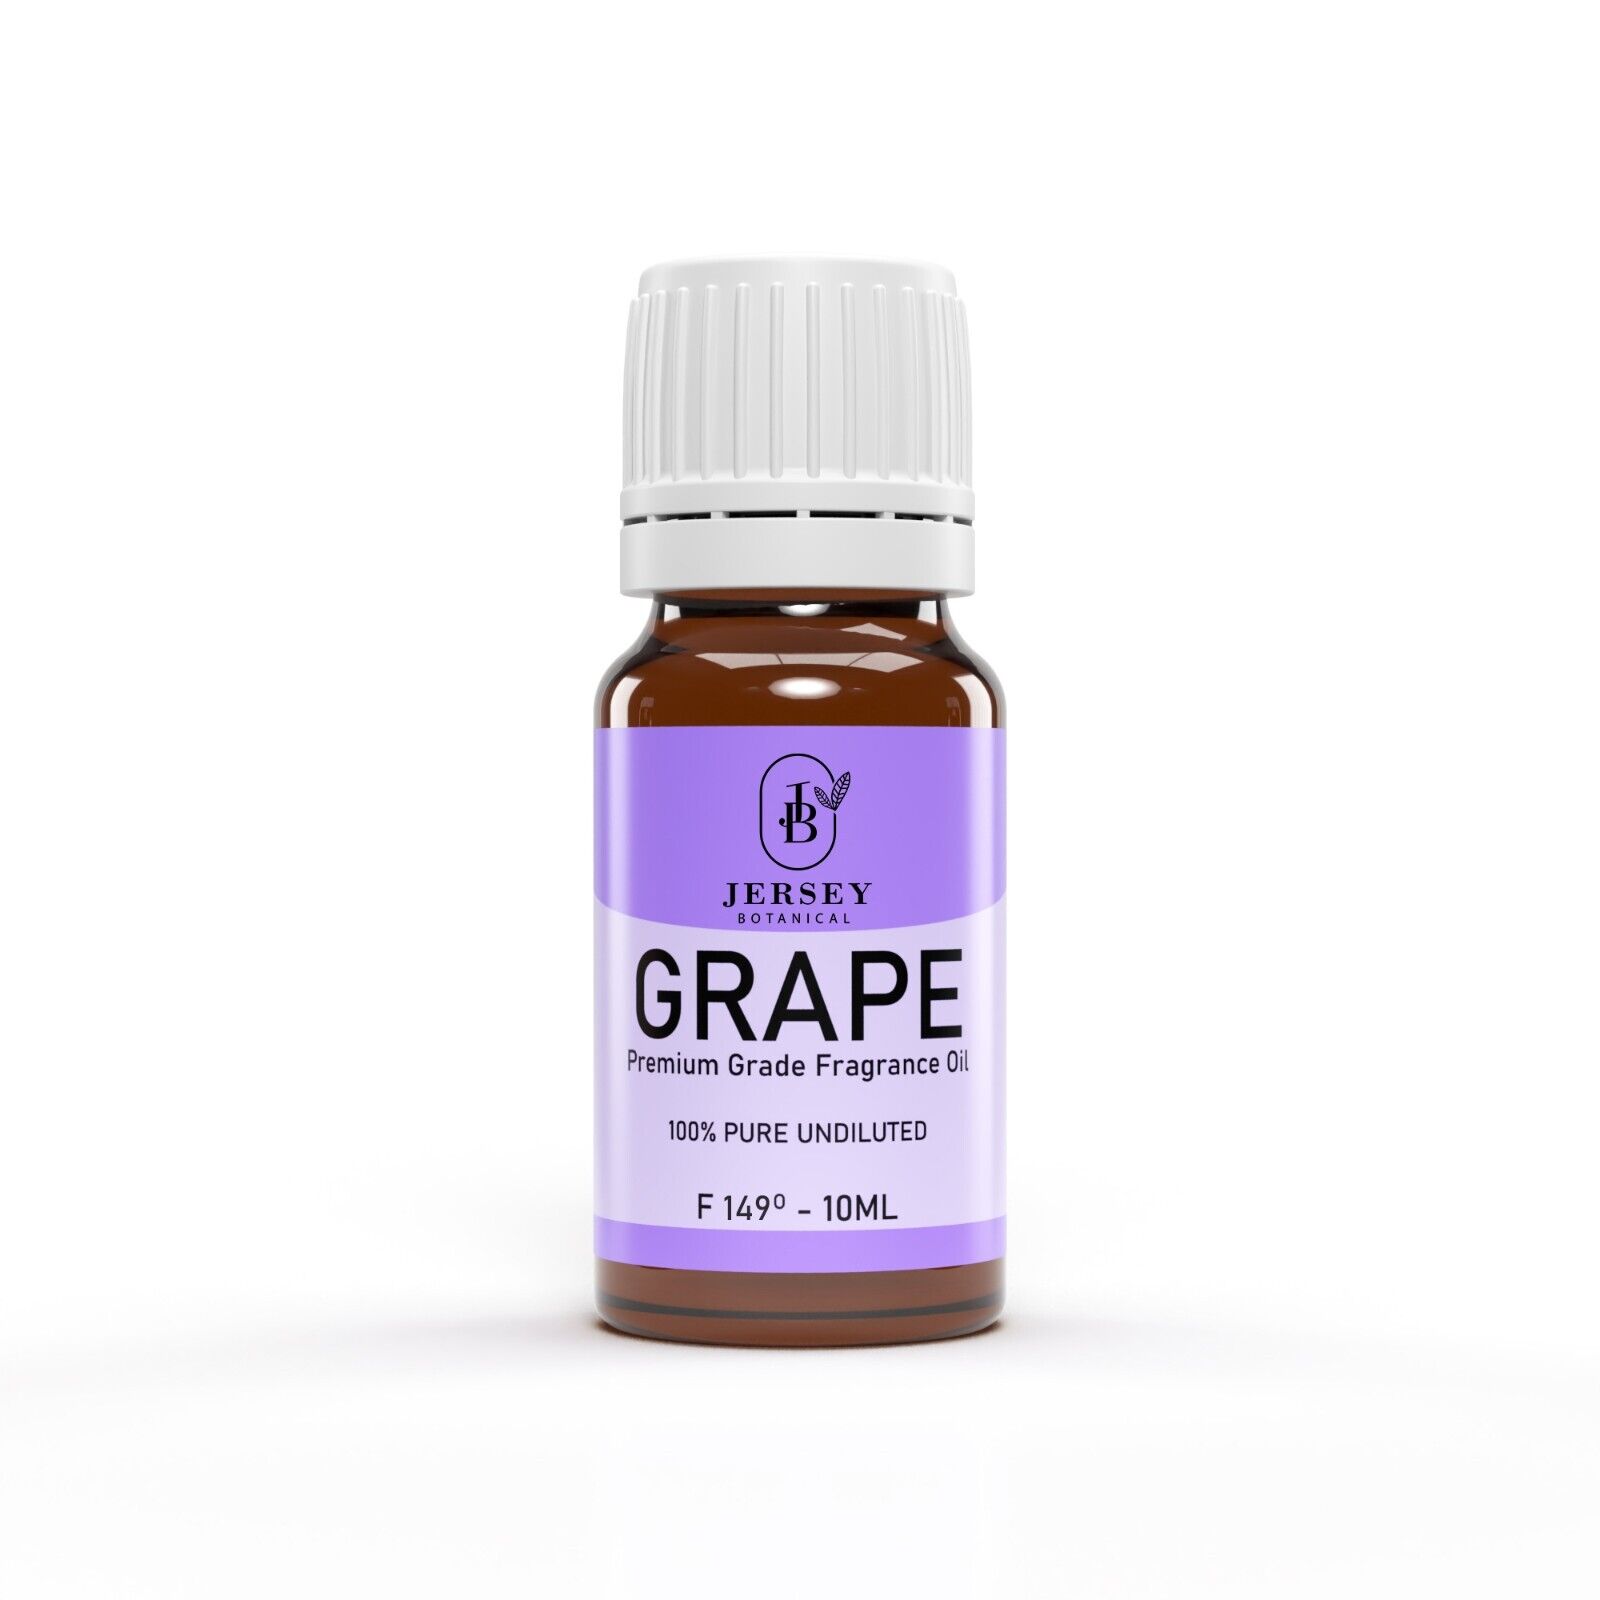 Grape Fragrance Oil 10ml. Premium Grade Scented Oil 100% Pure Candle Making